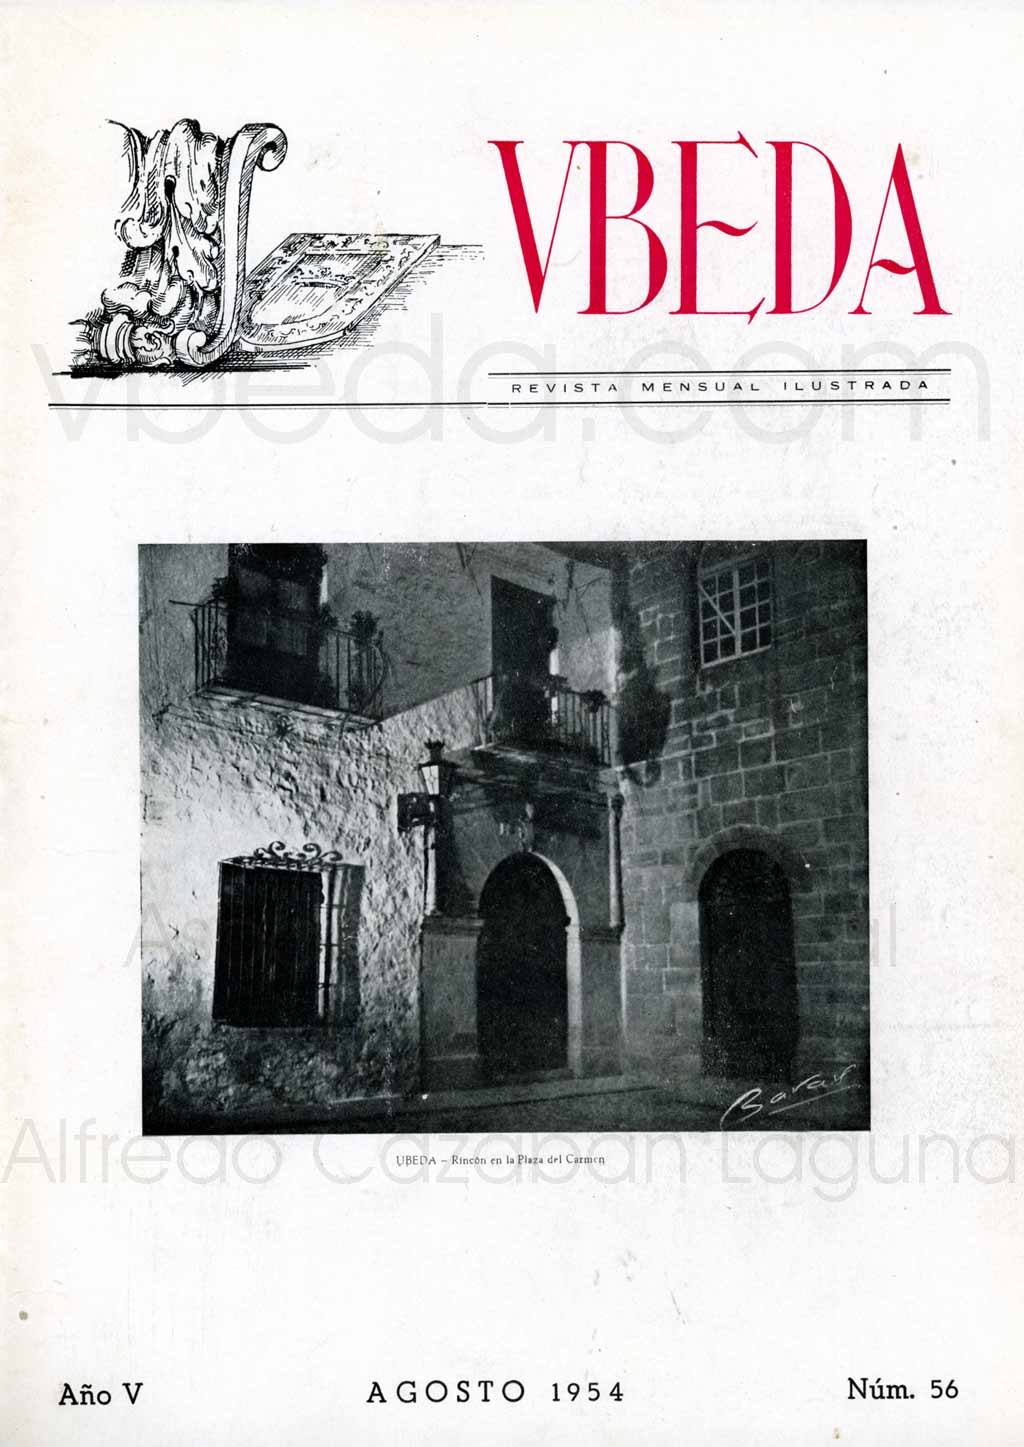 Revista Vbeda. Ao 5. N 56 de agosto de 1954